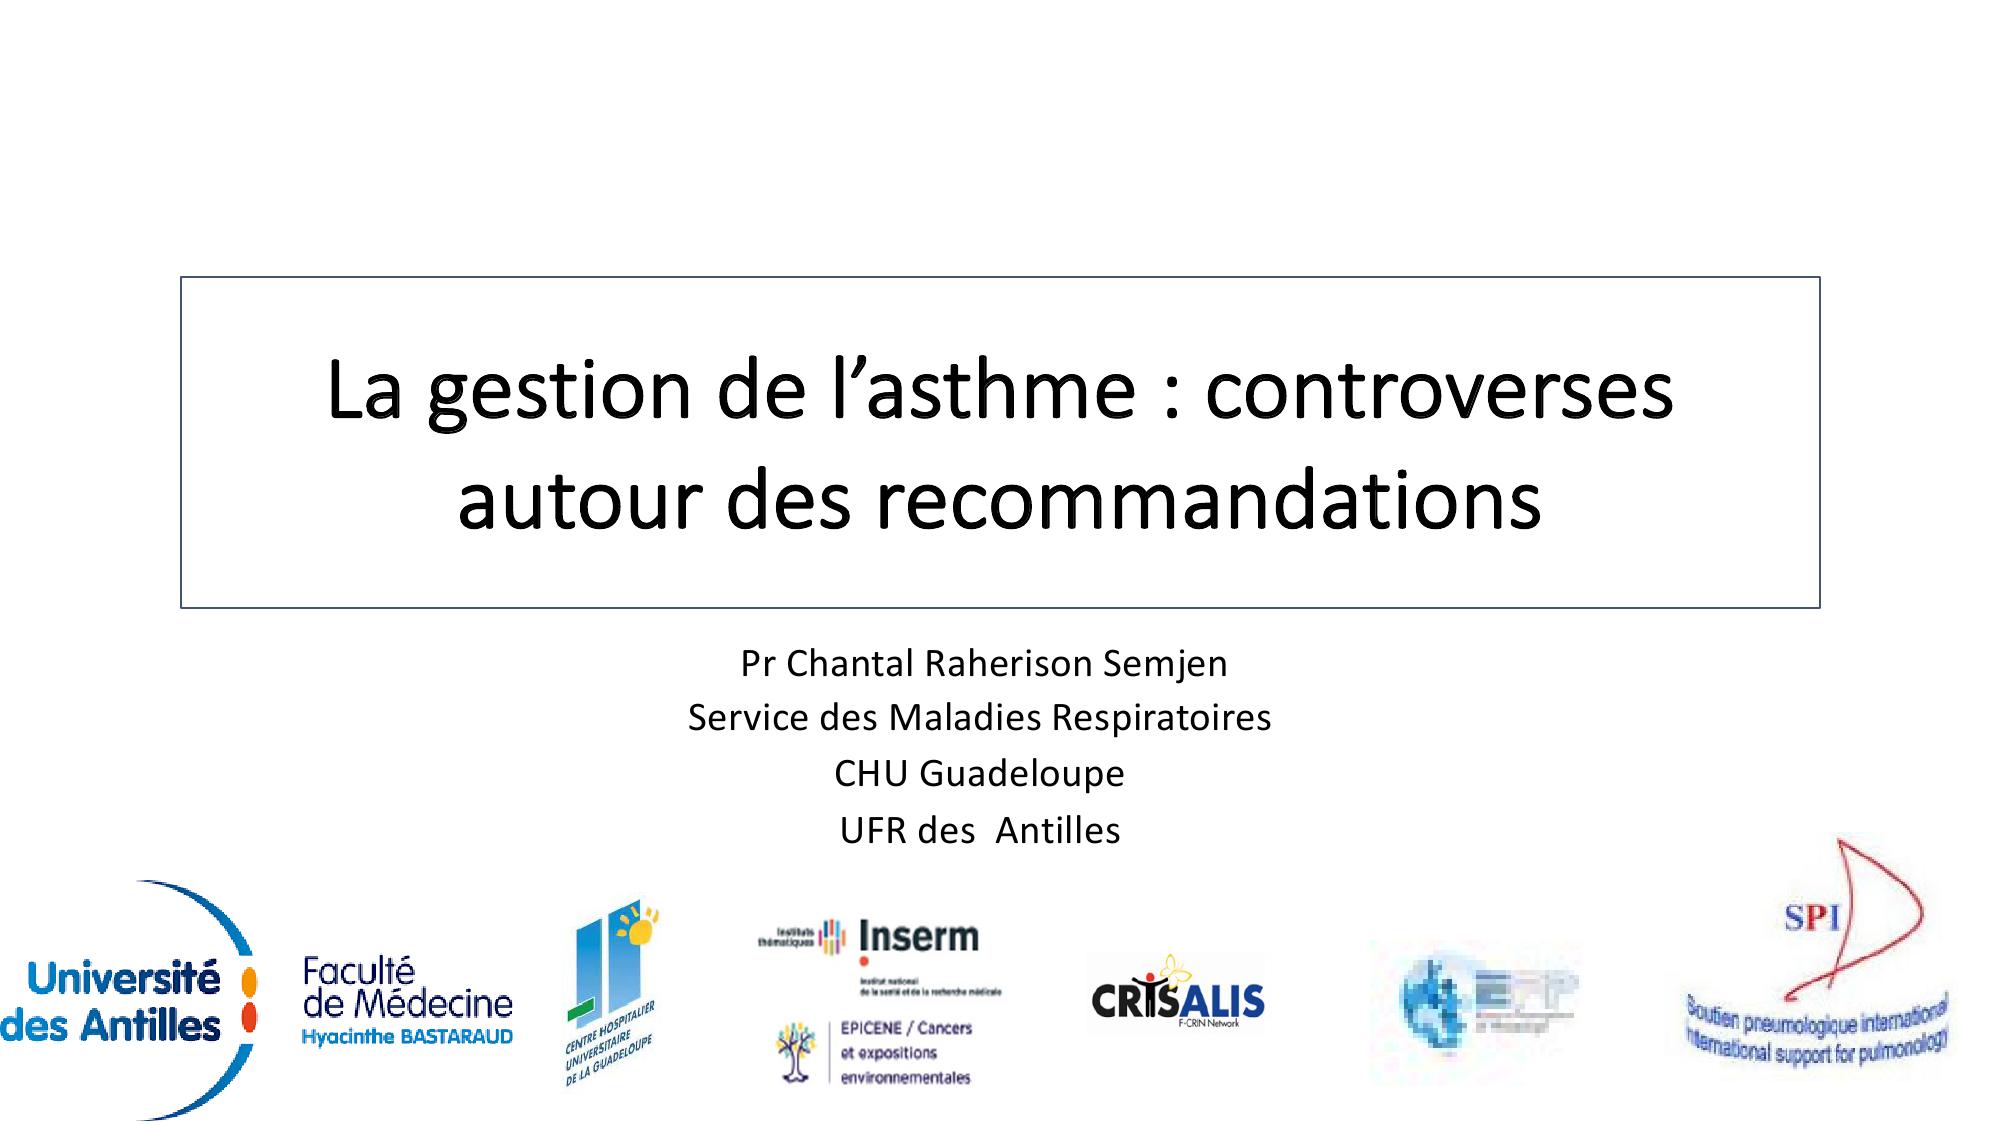 La gestion de l'asthme. controverses autour des recommandations. Chantal Raherison Semjen